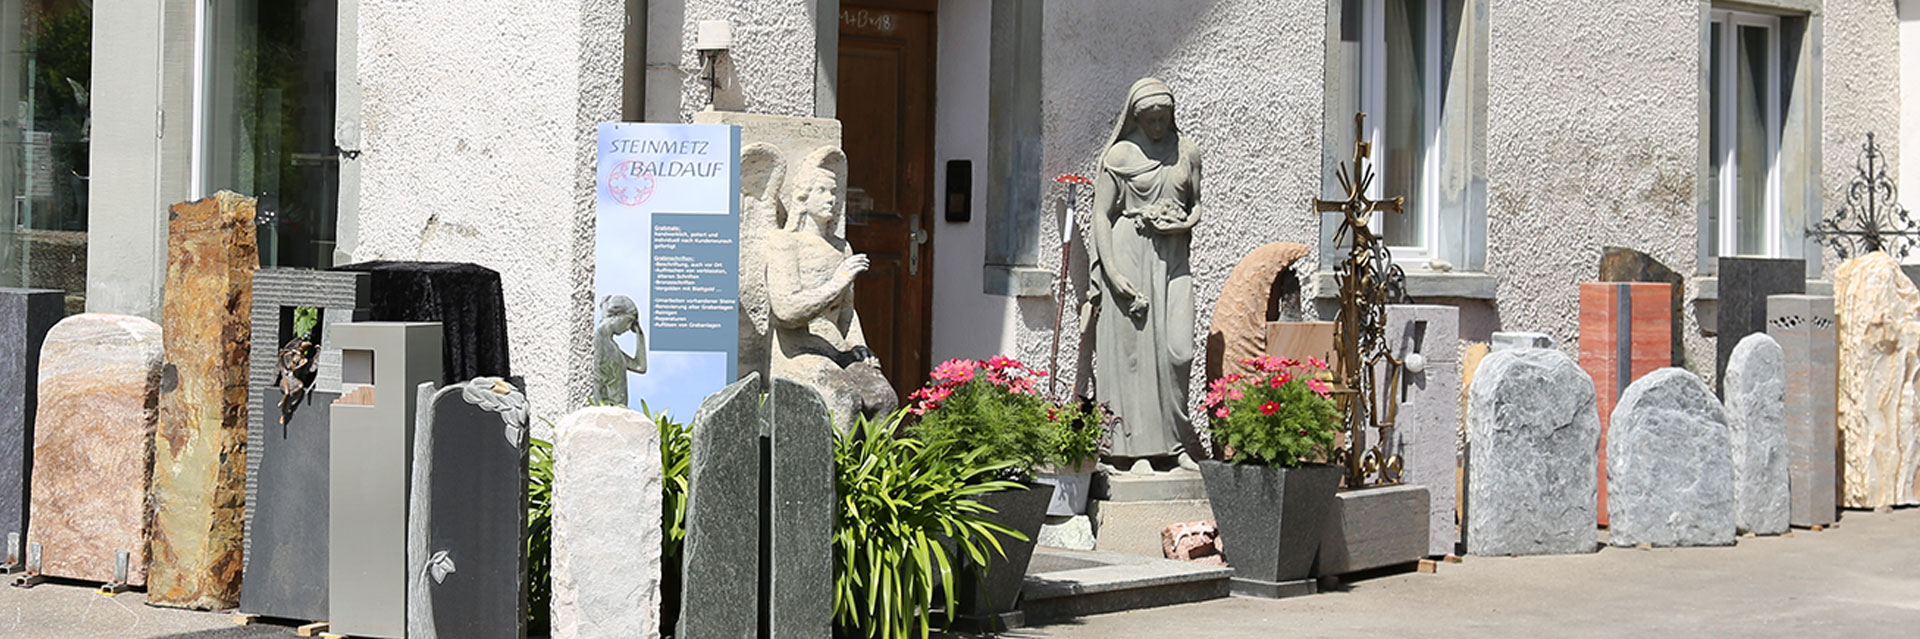 Steinskulpturen und Bildhauerarbeiten von Steinmetz Baldauf bei Immenstadt im Allgäu